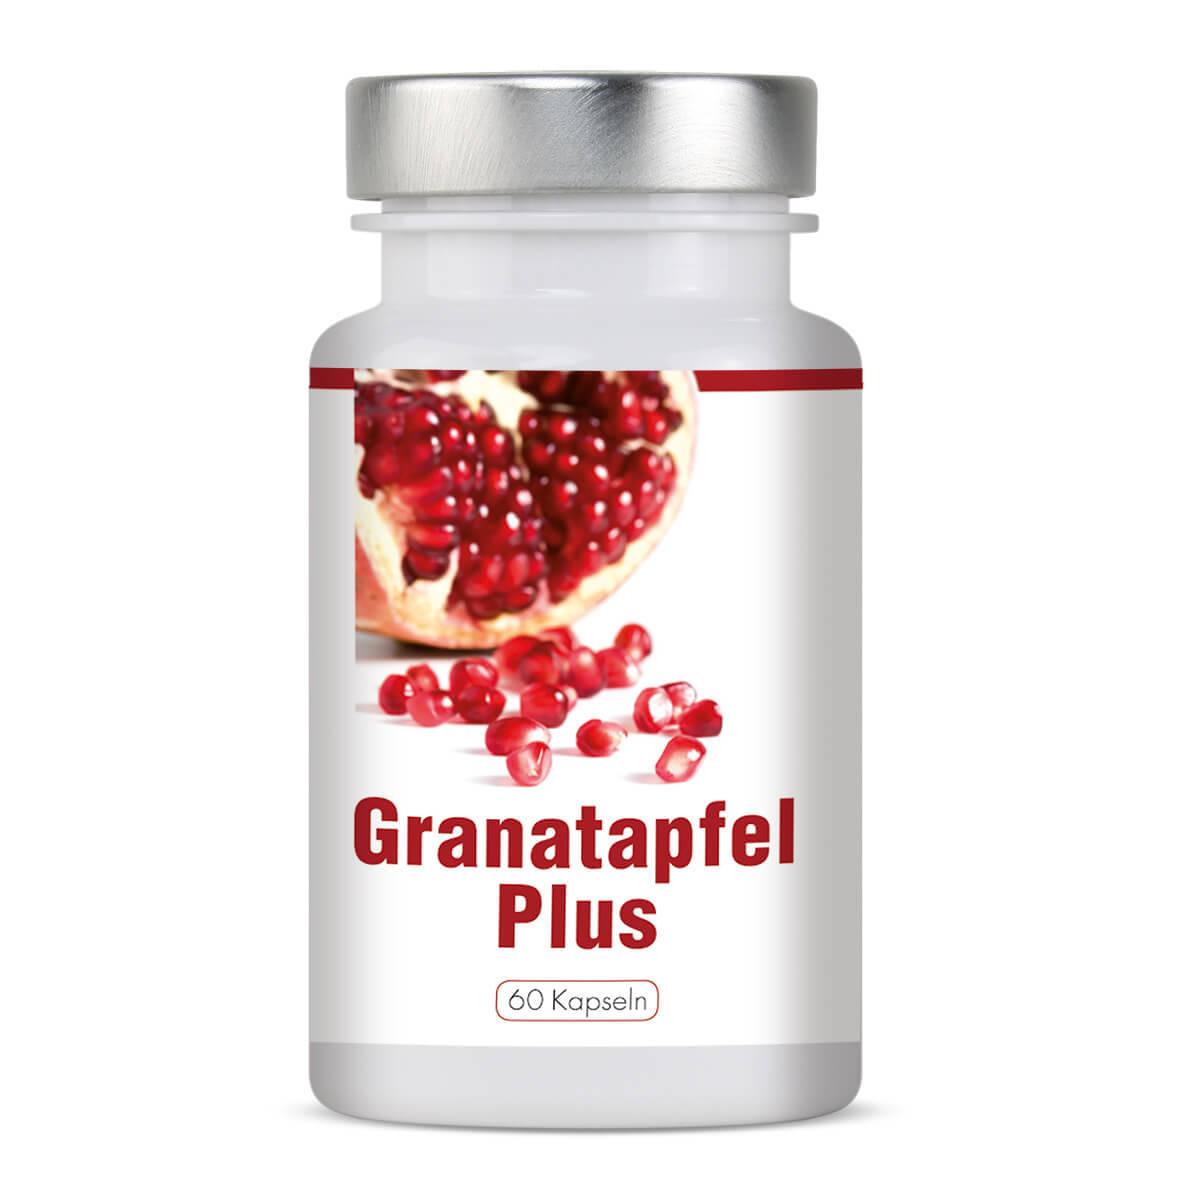 Granatapfel Plus 12-Monatskur 12 Dosen